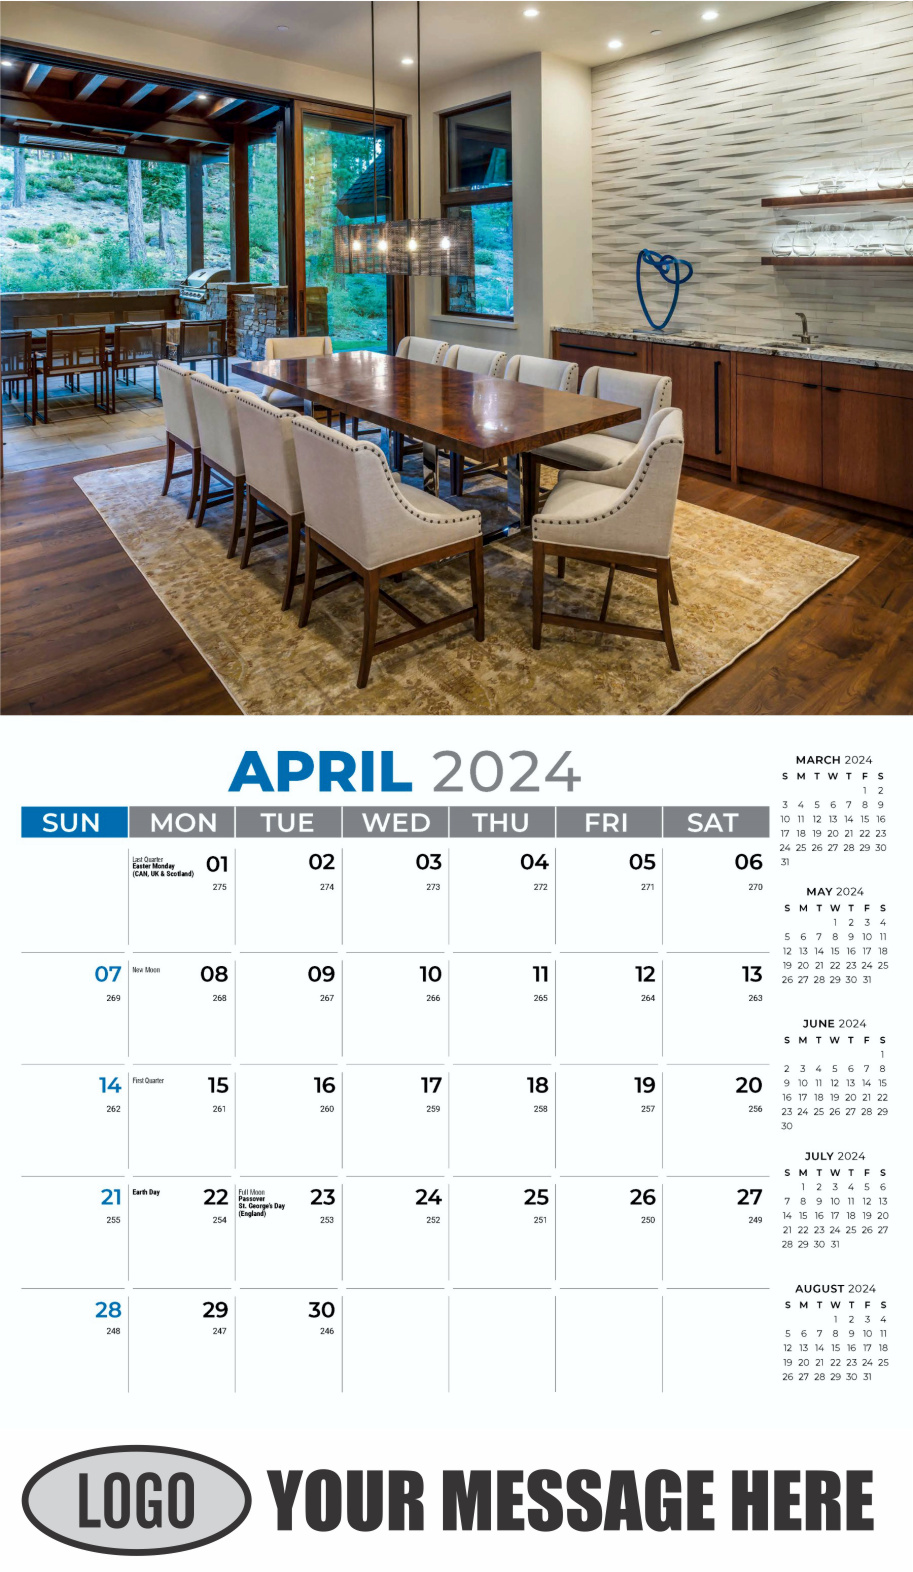 Decor and Design 2024 Interior Design Business Promotional Calendar - April